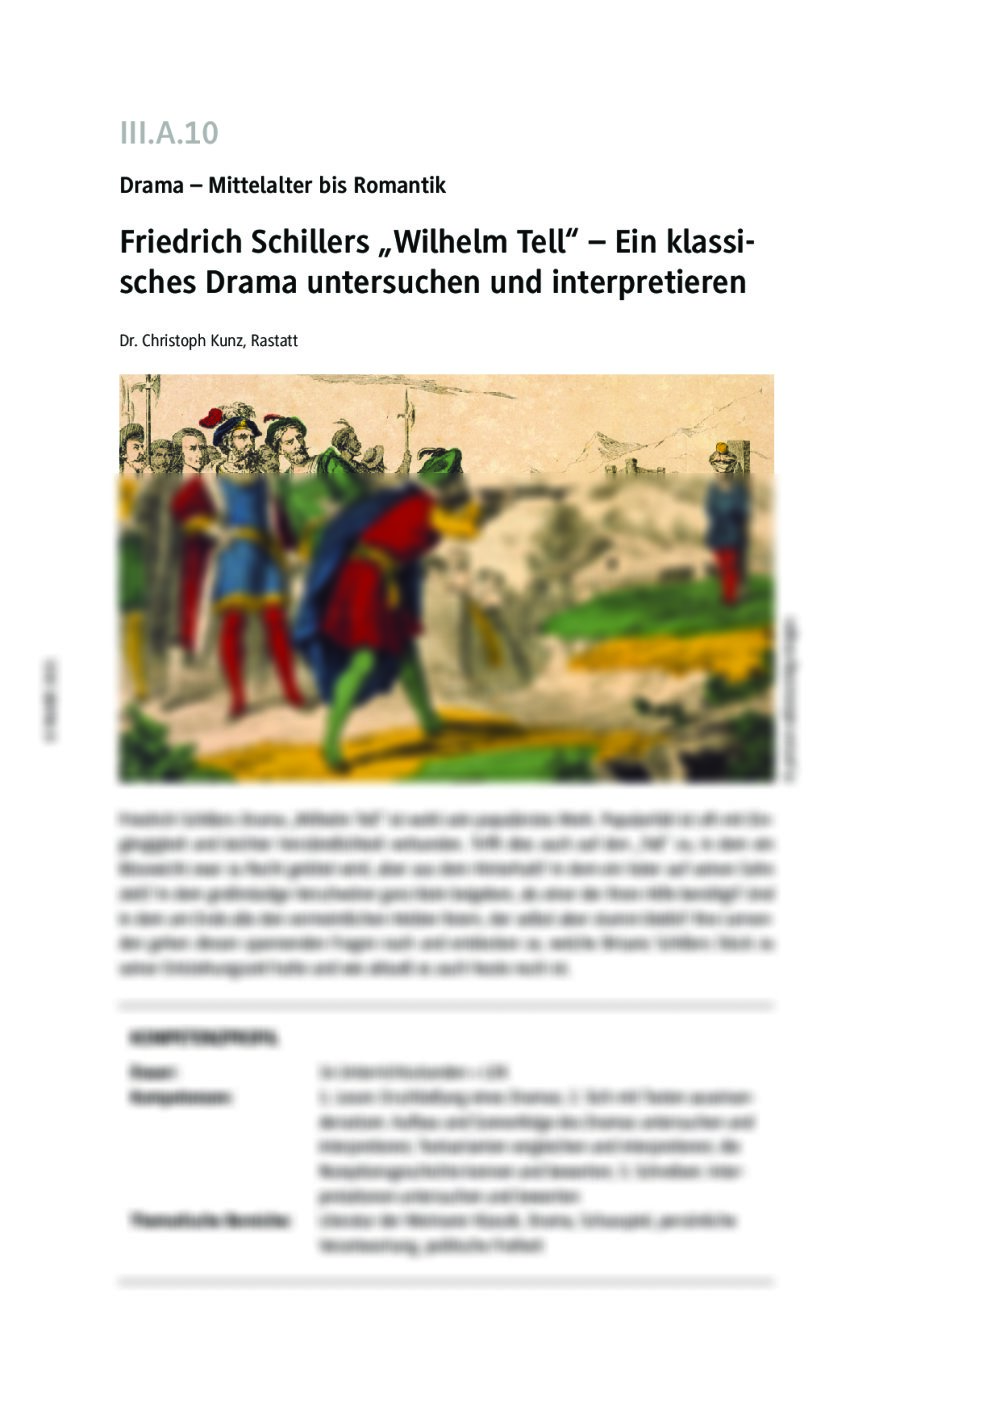 Friedrich Schillers "Wilhelm Tell" - Seite 1